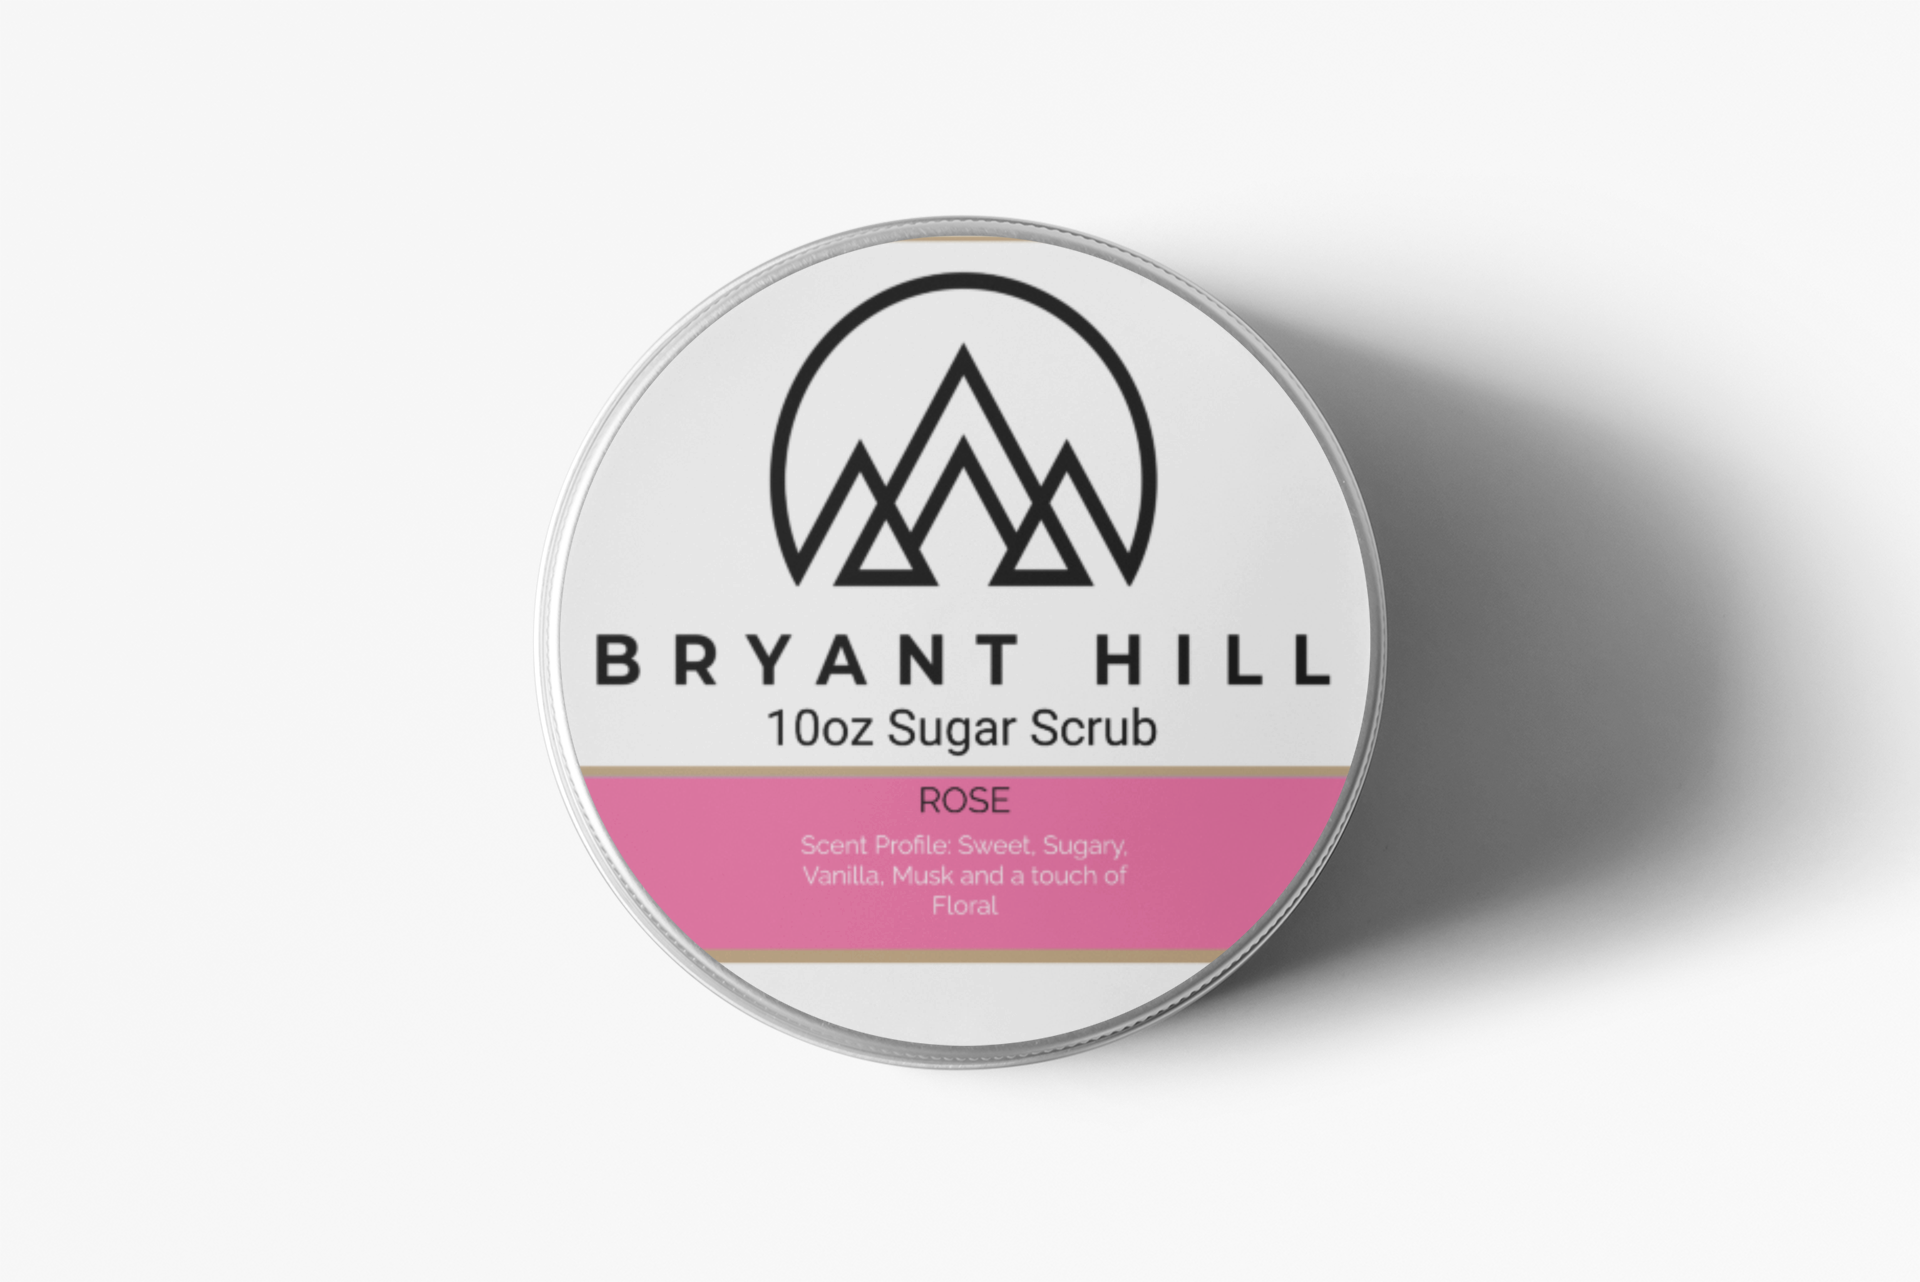 BRYANT-HILL ALL-NATURAL-ORGANIC-SUGAR-SCRUB-ROSE